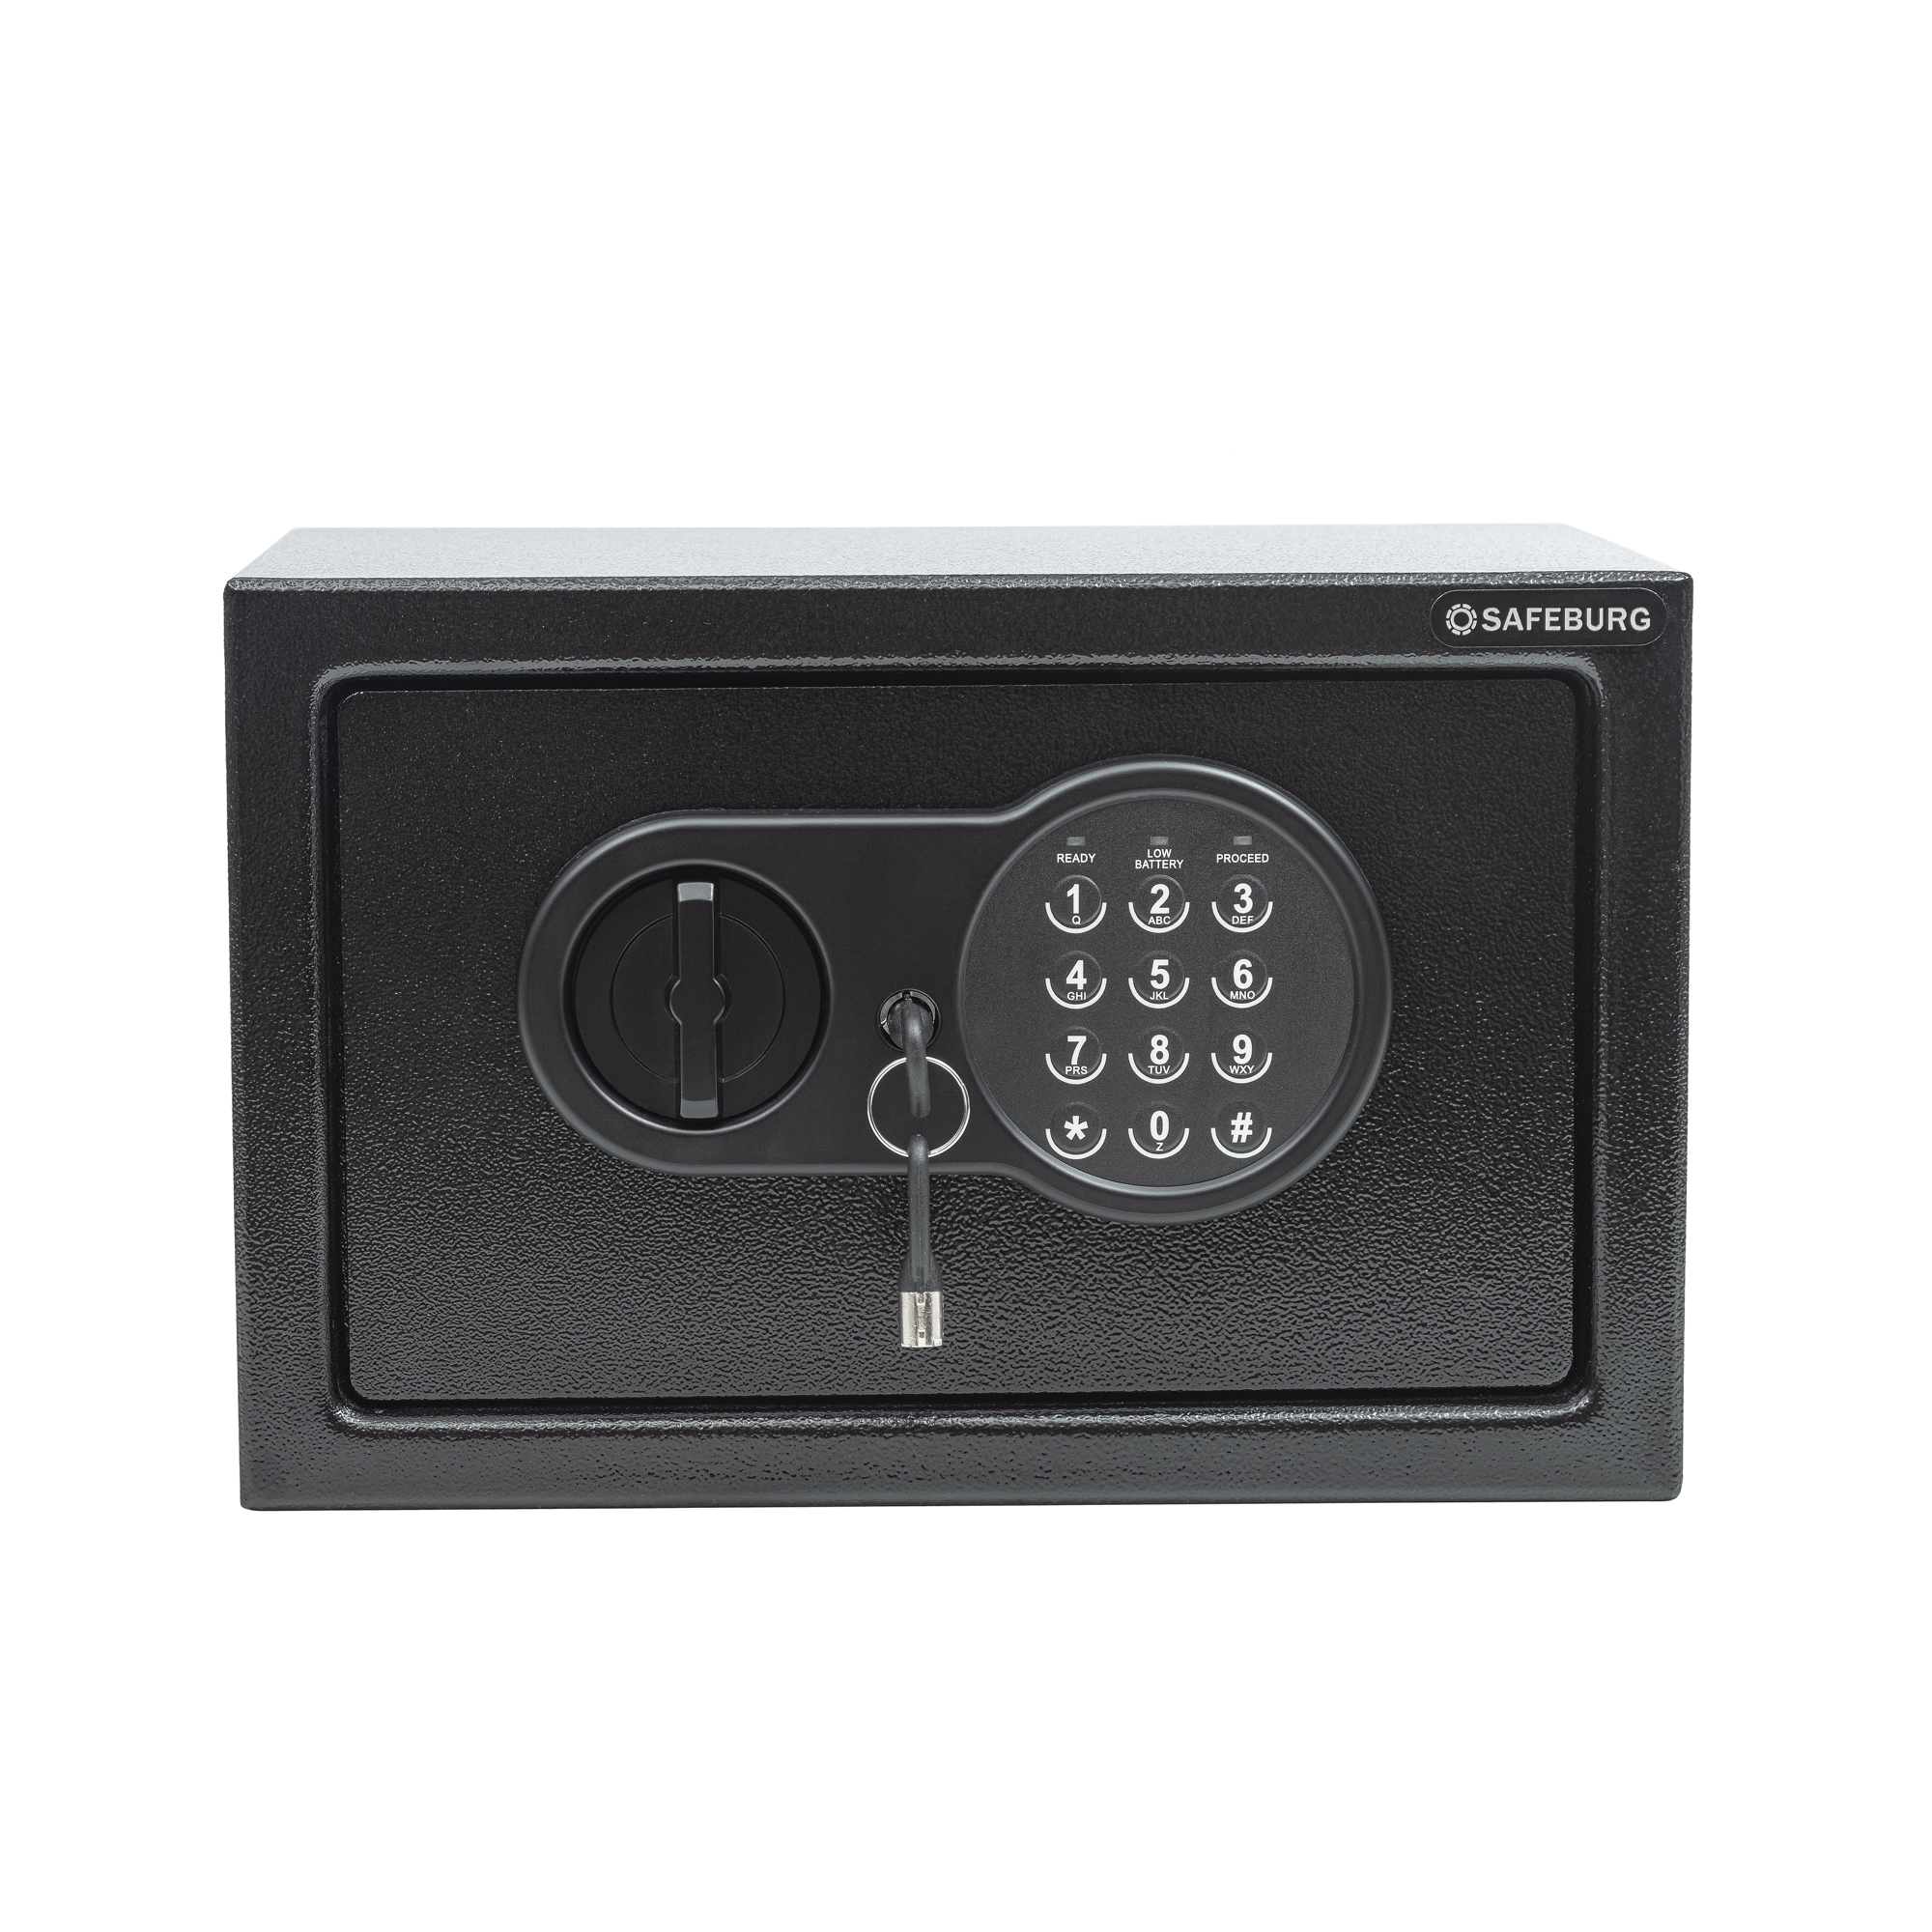 фото Сейф safeburg sb-200 black, сейф для денег и документов с электронным кодовым замком